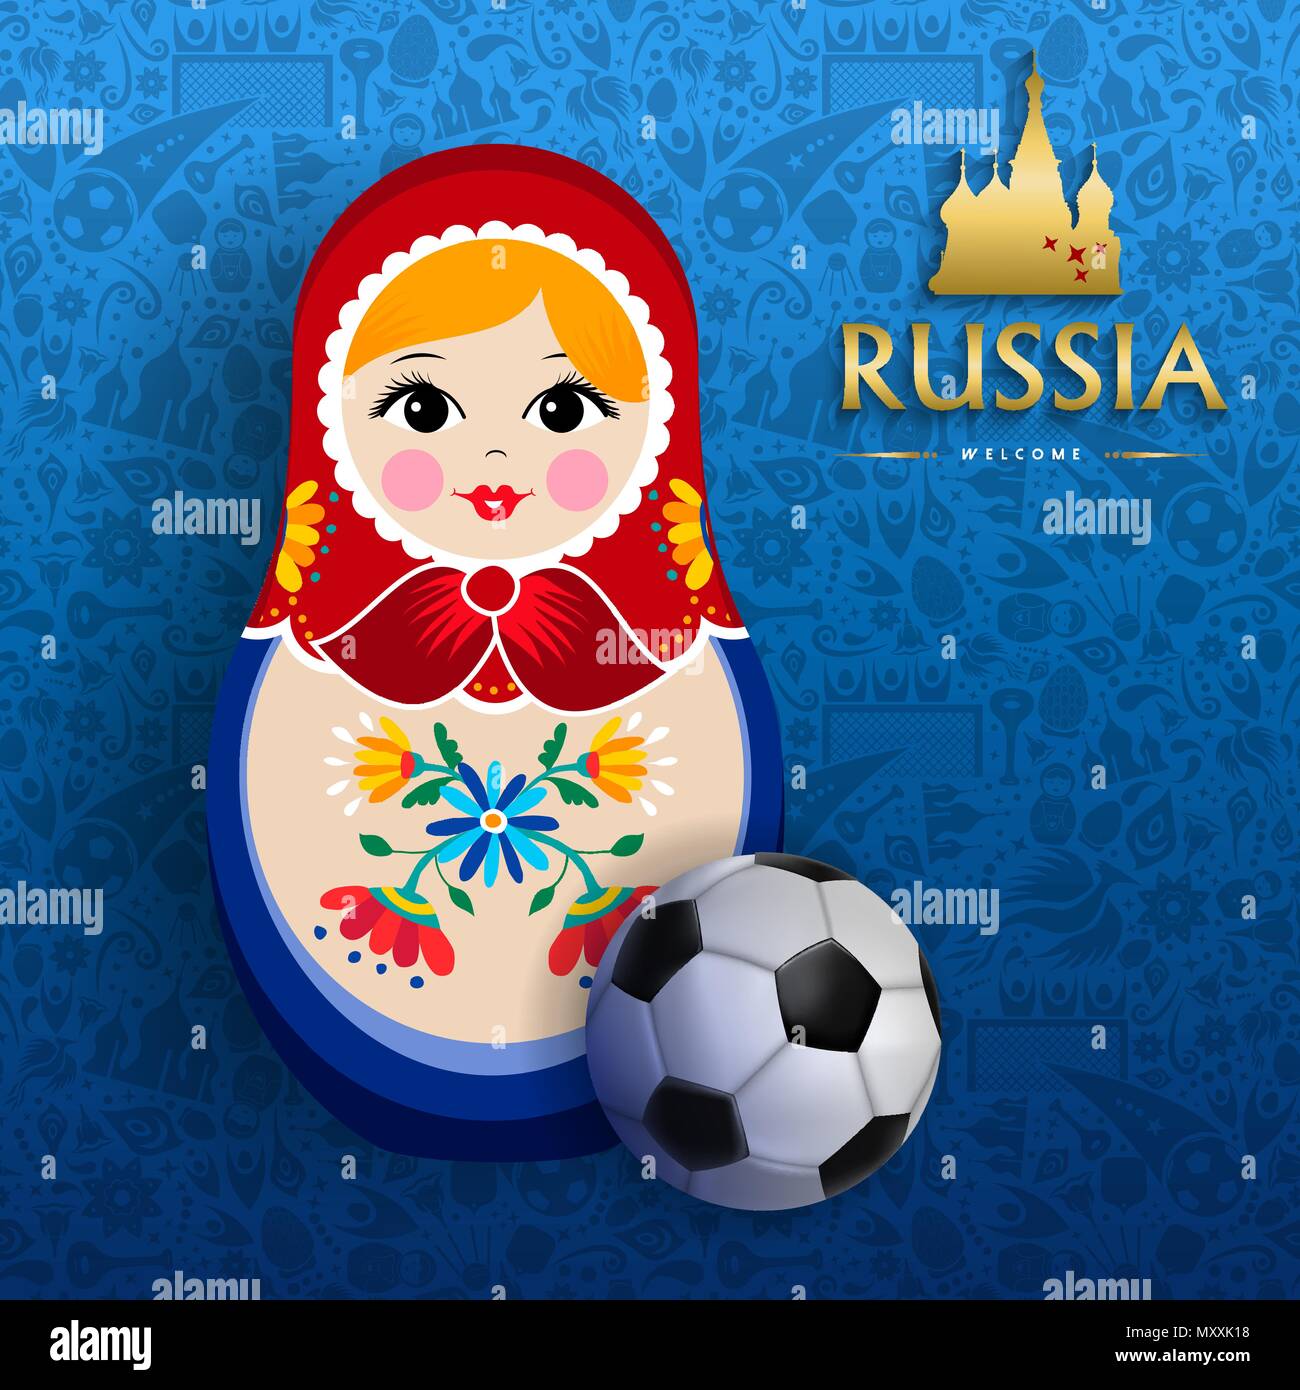 Russische Puppe Plakat für Russland Sport Event. Traditionelle matrioska Frau Souvenir mit Fußball auf blaue Farbe Hintergrund. EPS 10 Vektor. Stock Vektor